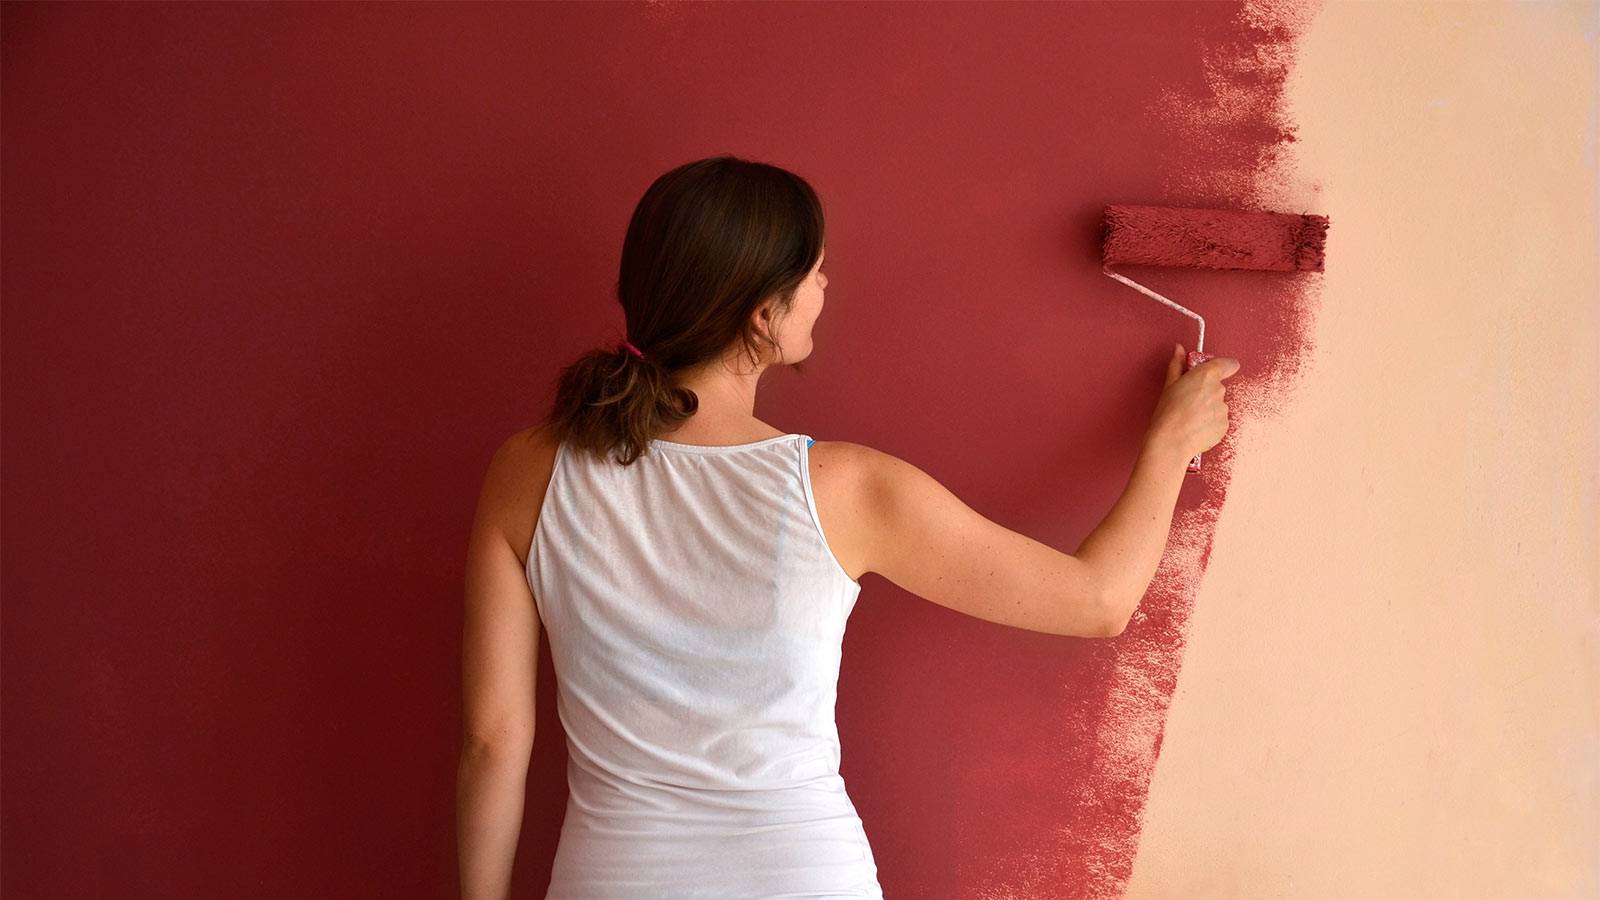 Топ-17 лучших красок для стен в квартире: выбираем лучшую